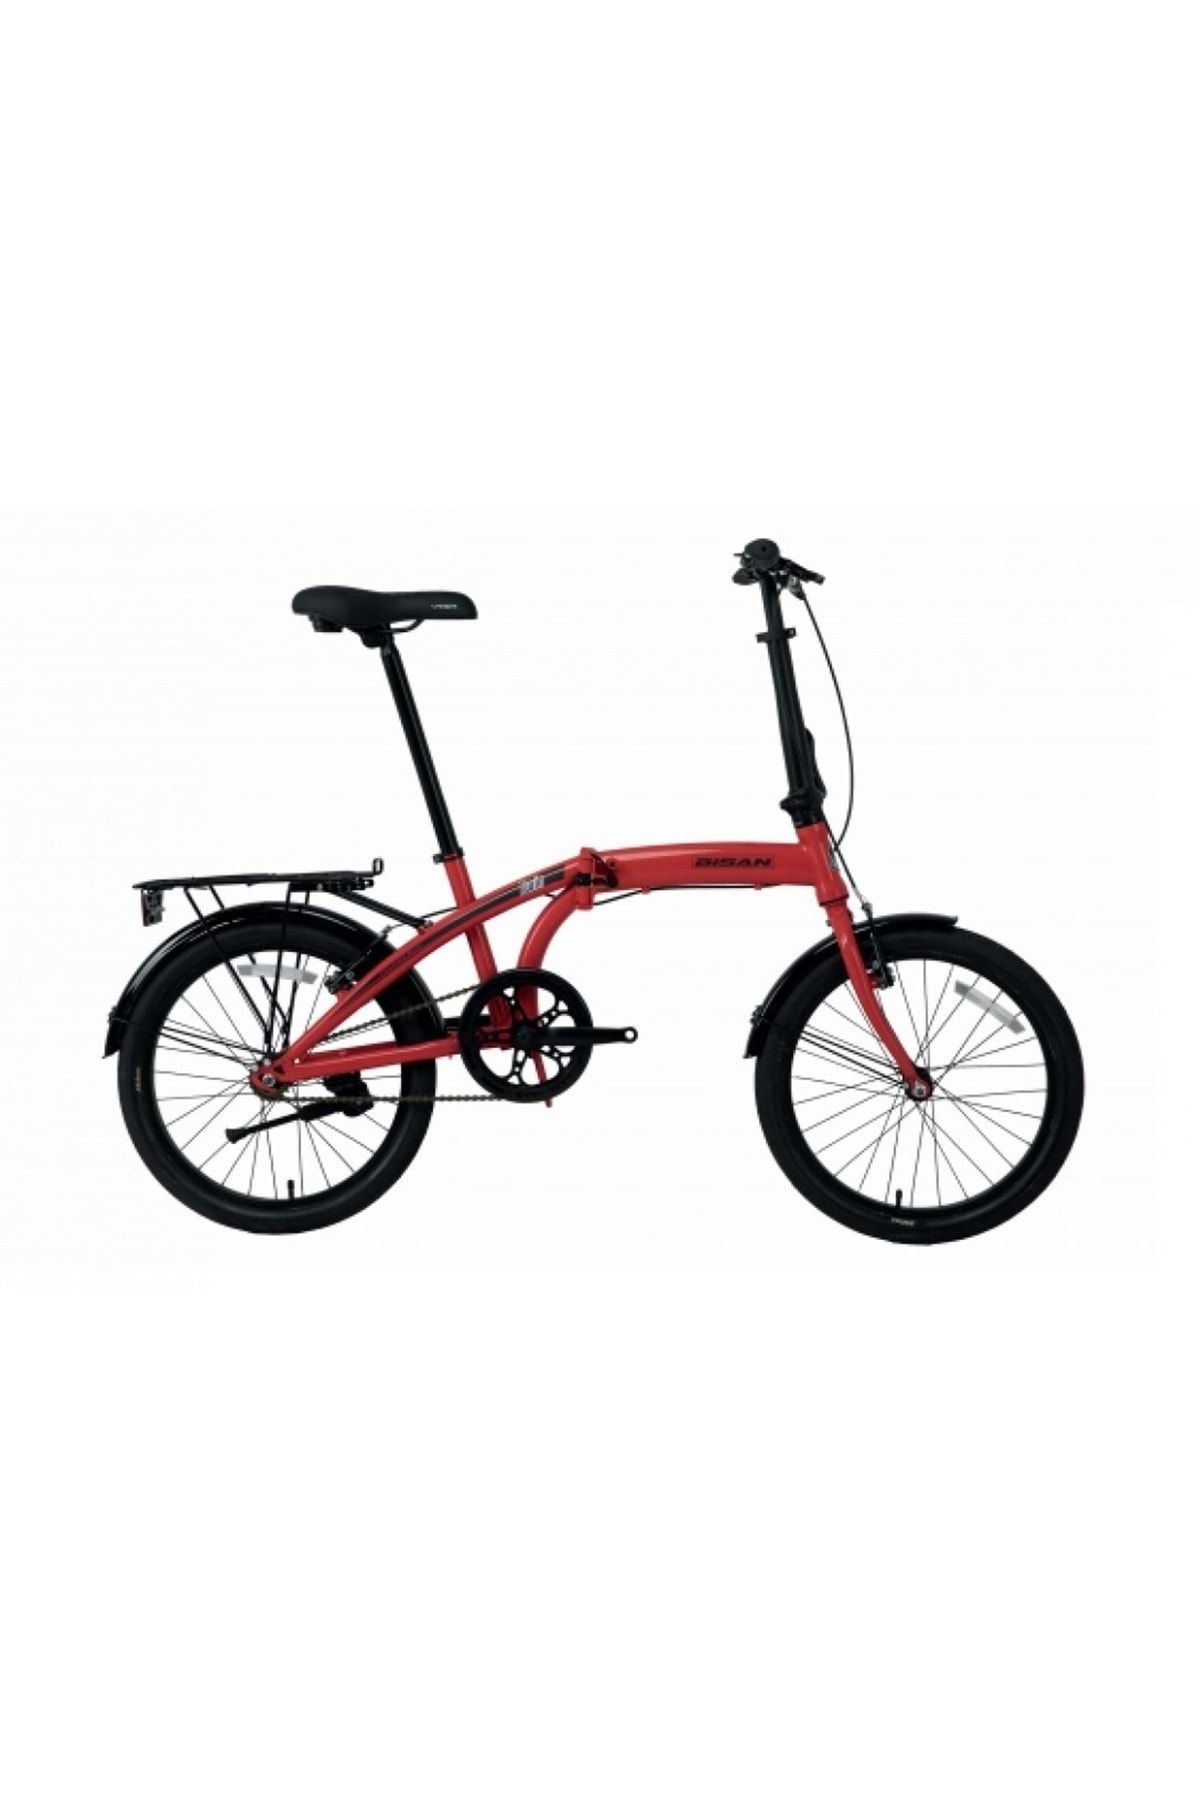 Bisan Twin-s Katlanır Bisiklet Kadro:28cm Vites:6 20" Jant Kırmızı/siyah